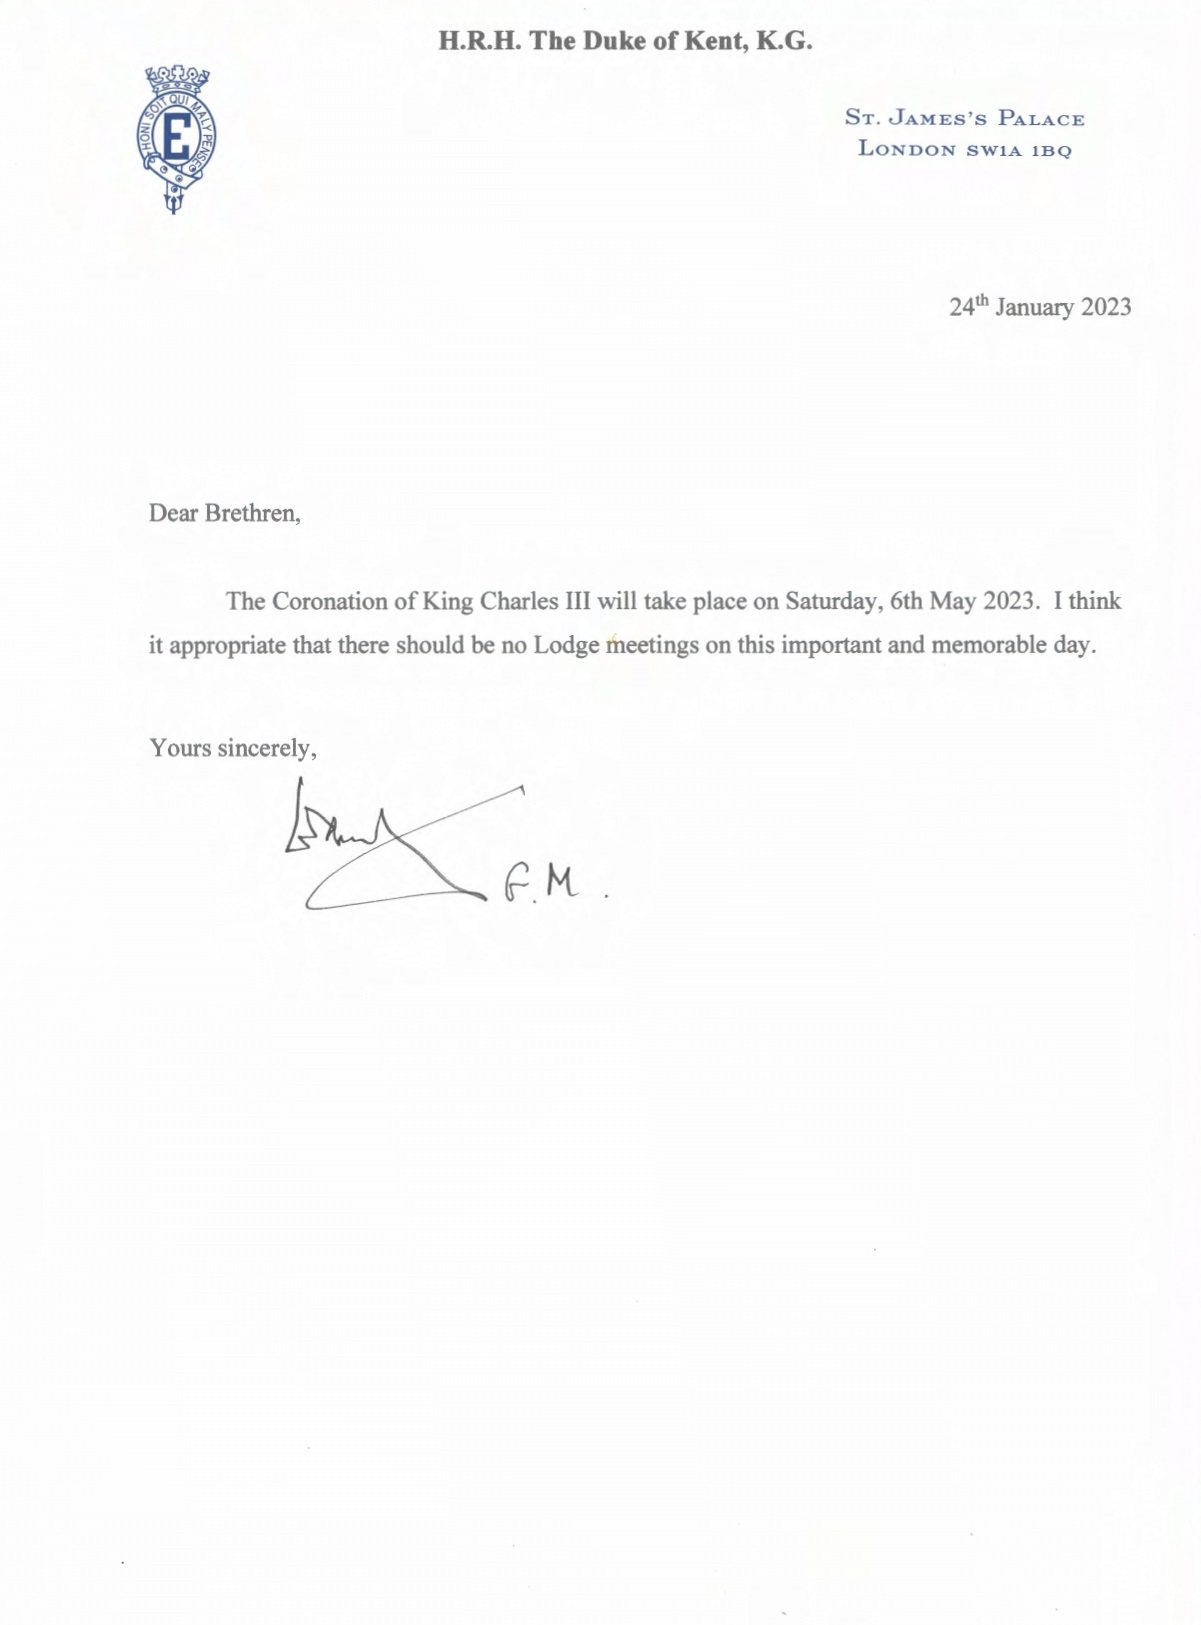 Letter from the Grand Master, HRH The Duke of Kent, KG